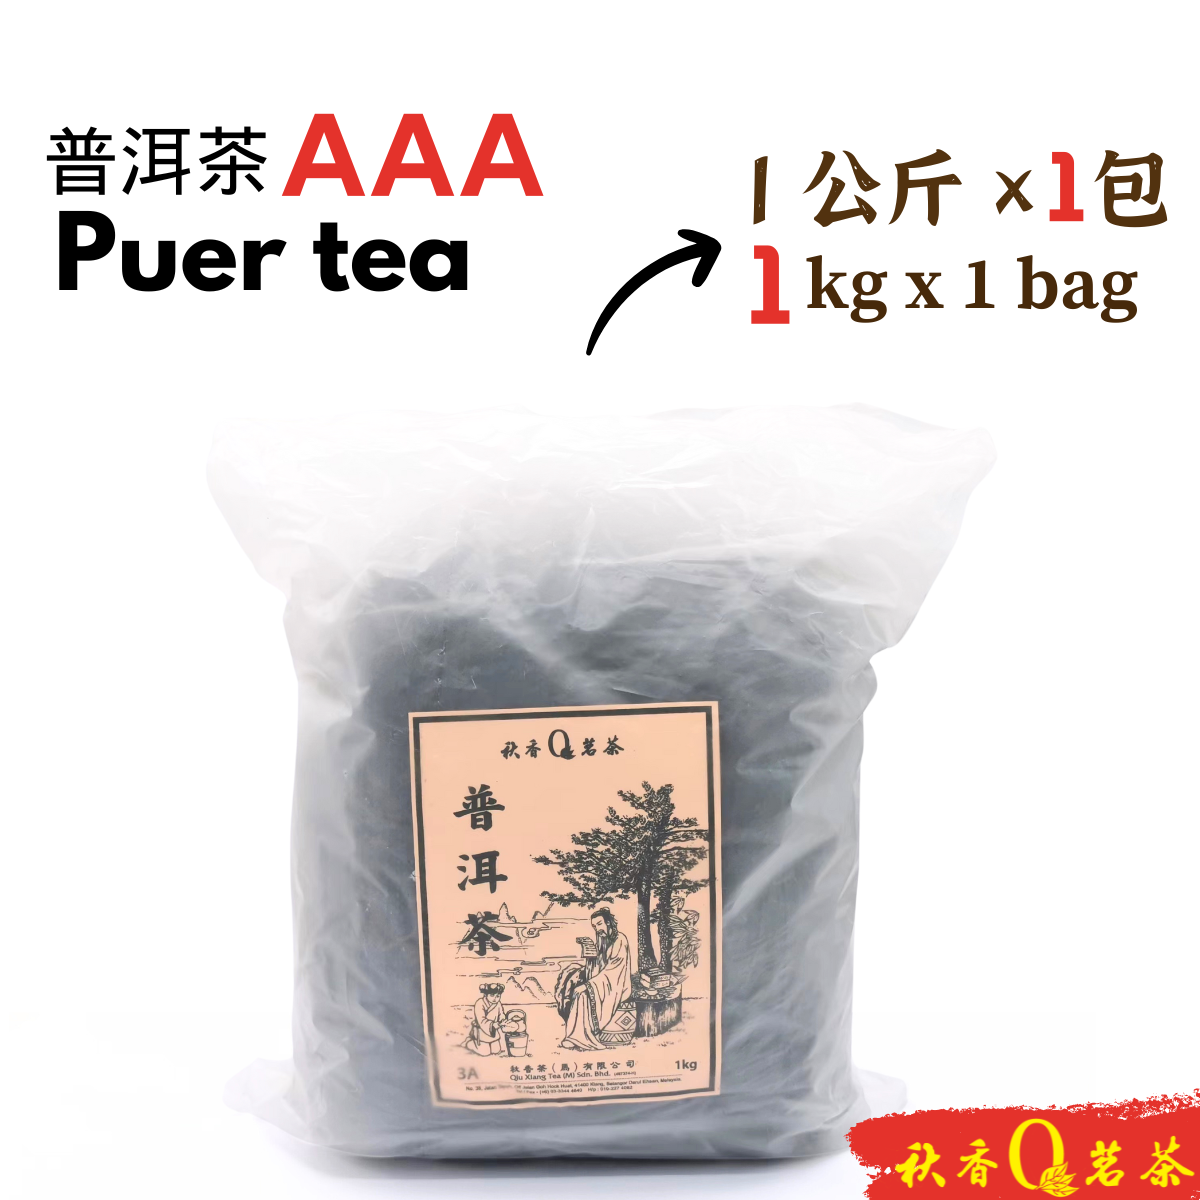 普洱茶AAA Puer Tea AAA 【1kg】|【普洱熟茶 Ripe Puer tea】